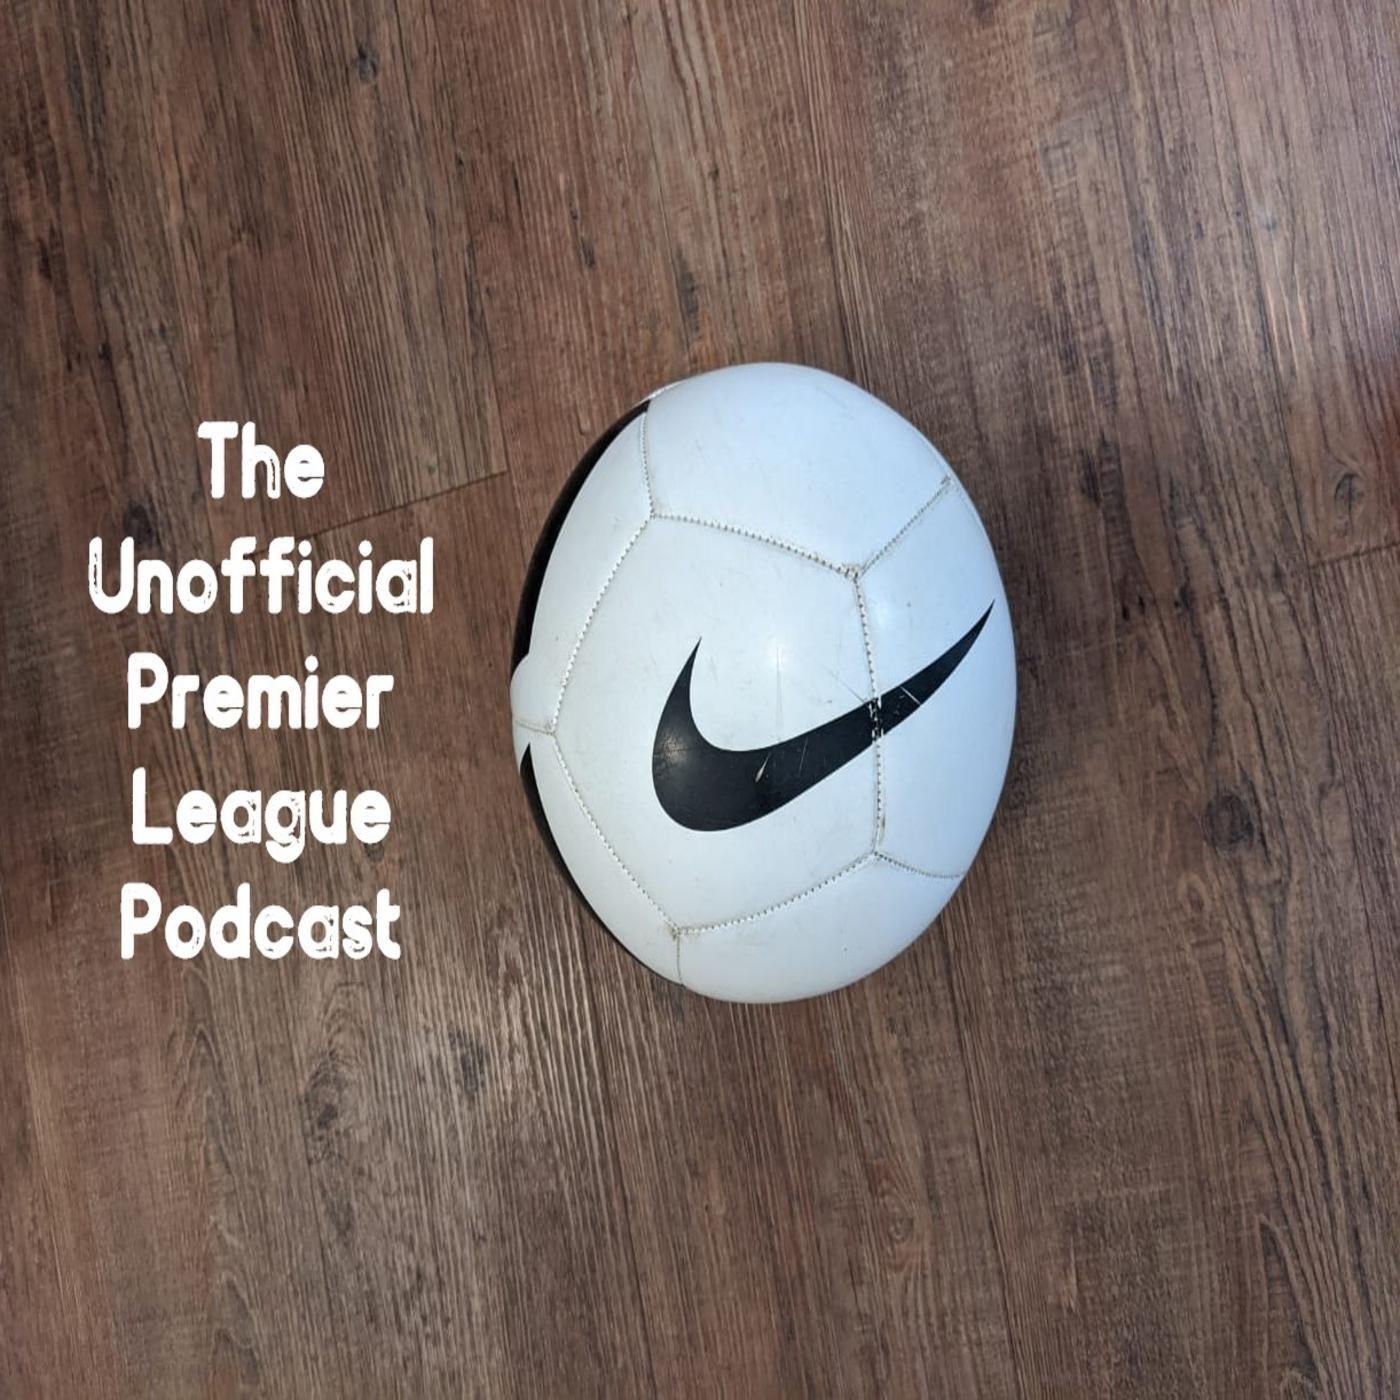 The Unofficial Premier League Podcast